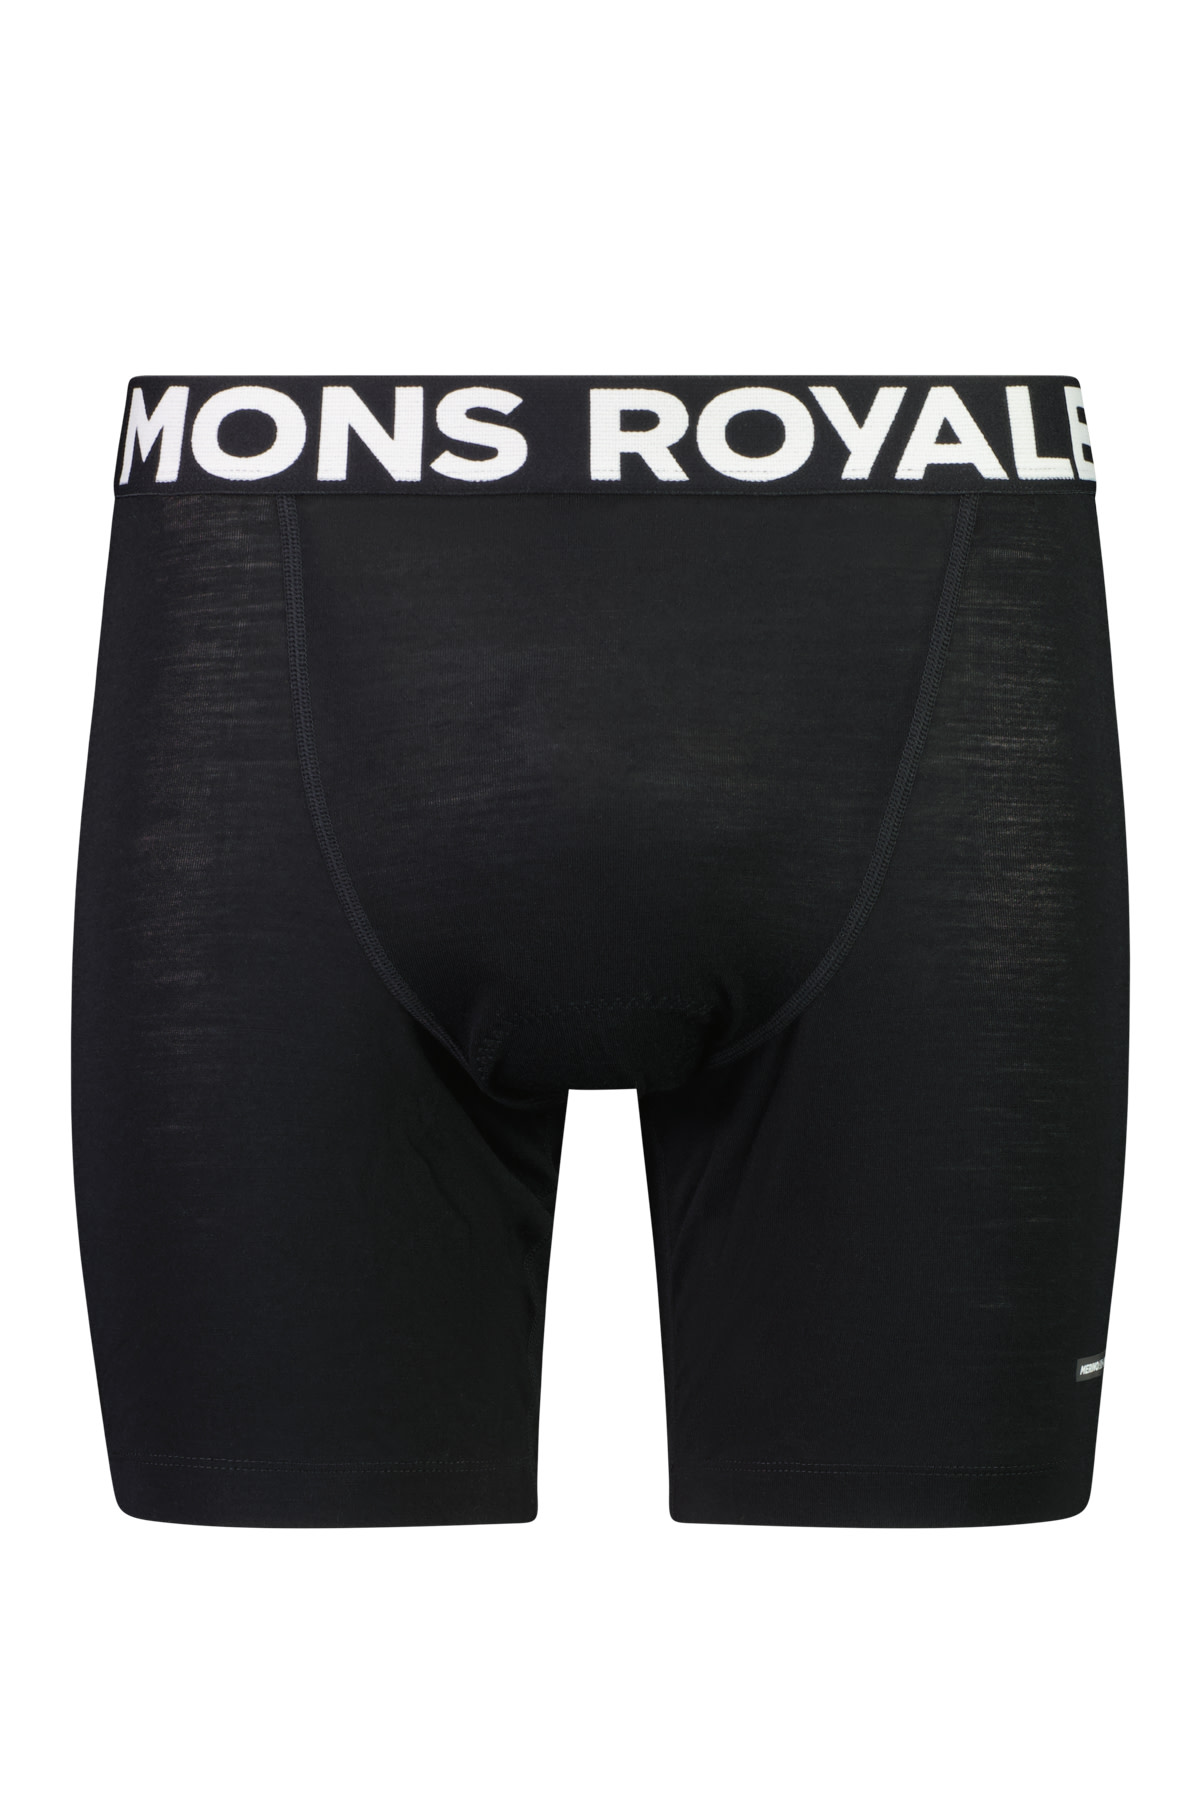 Mons Royale Men’s Low Pro Merino Aircon Bike Short Liner Black